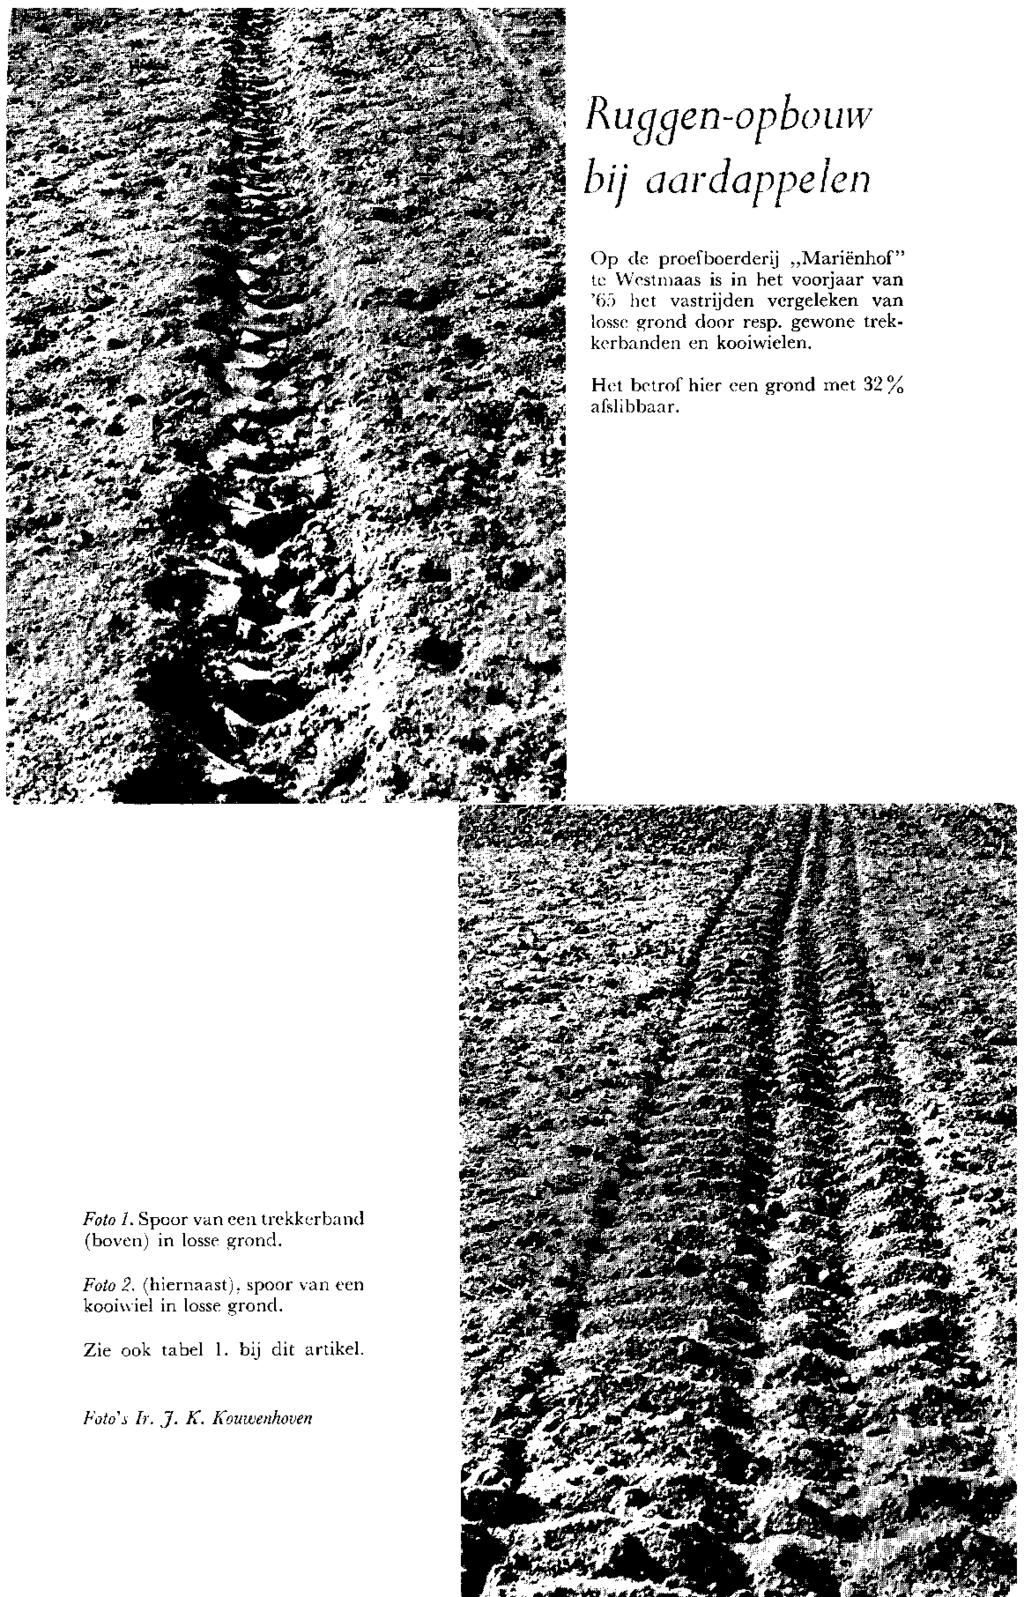 Ruqqen-opbouw bij aardappelen Op de proefboerderij Mariënhof" te Westmaas is in het voorjaar van '(i. - ) het vastrijden vergeleken van losse grond door resp. gewone trekkerbanden en kooiwielen. '.»\'/i>?